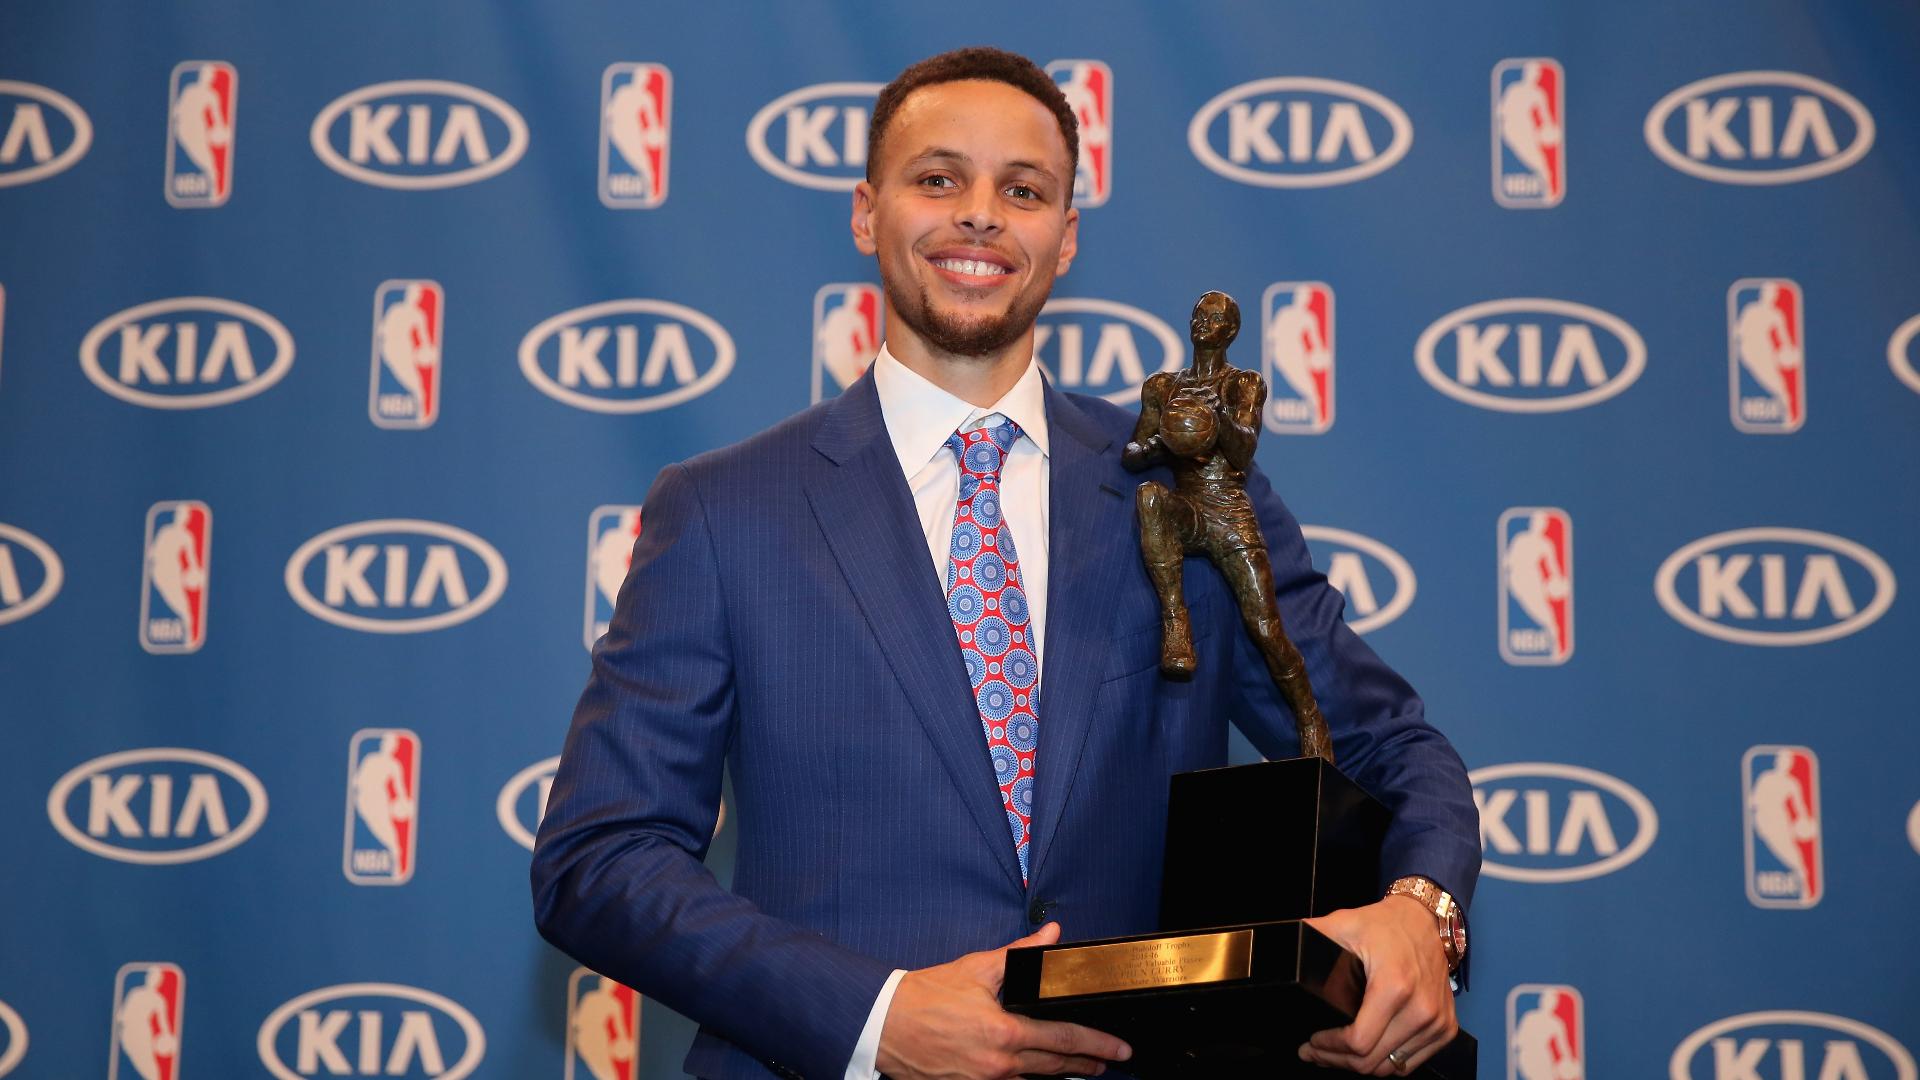 Riley Curry wins the MVP award again. Sorry, Stephen Curry – Sun